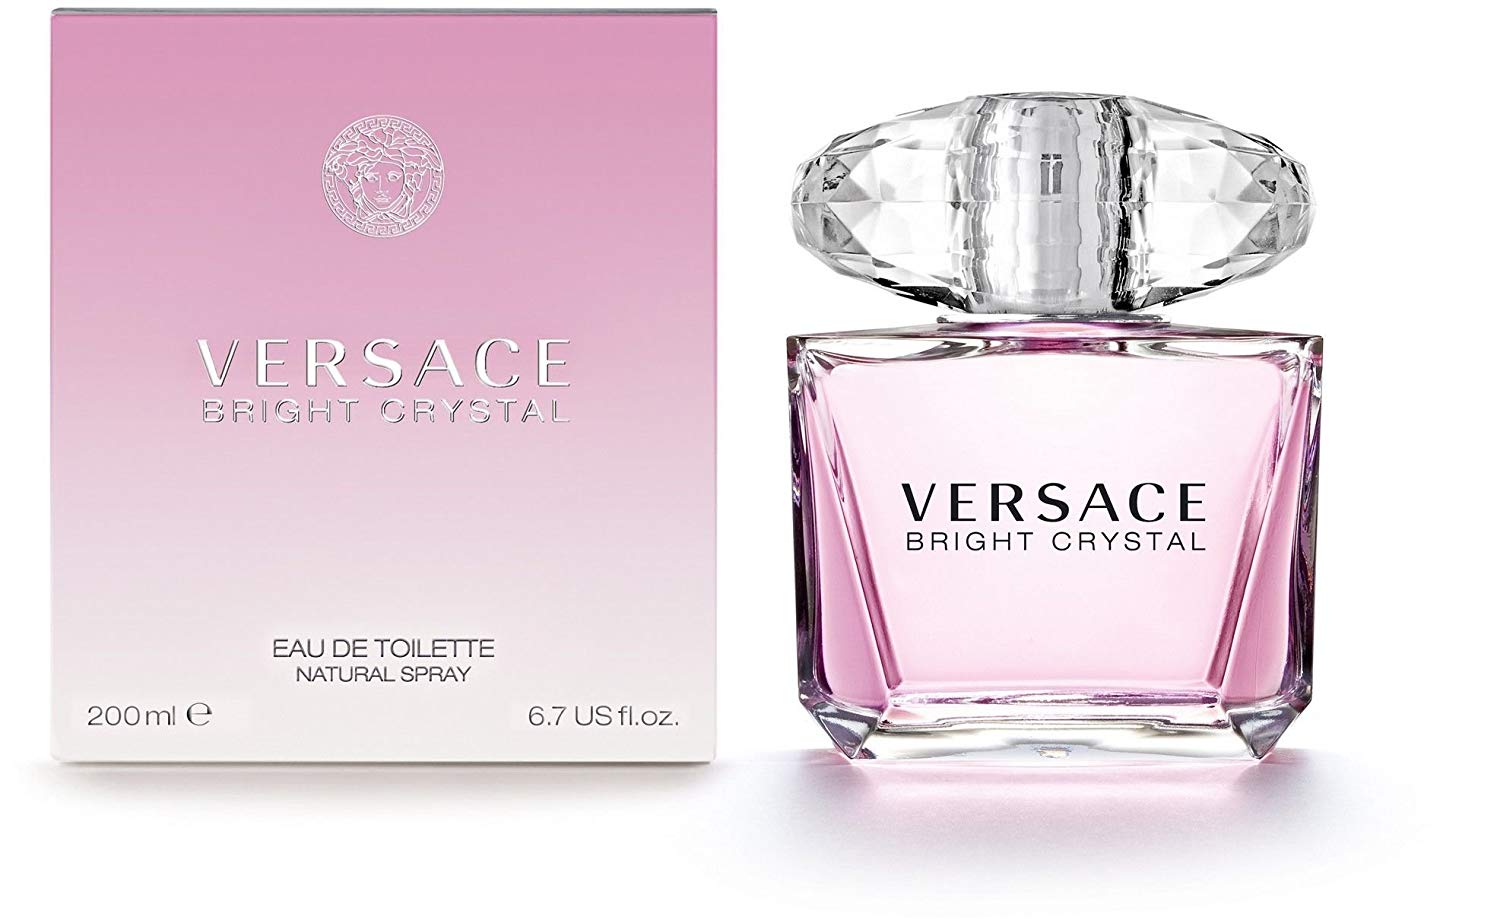 Review Nước Hoa Versace hồng Bright Crystal dành riêng cho phái nữ